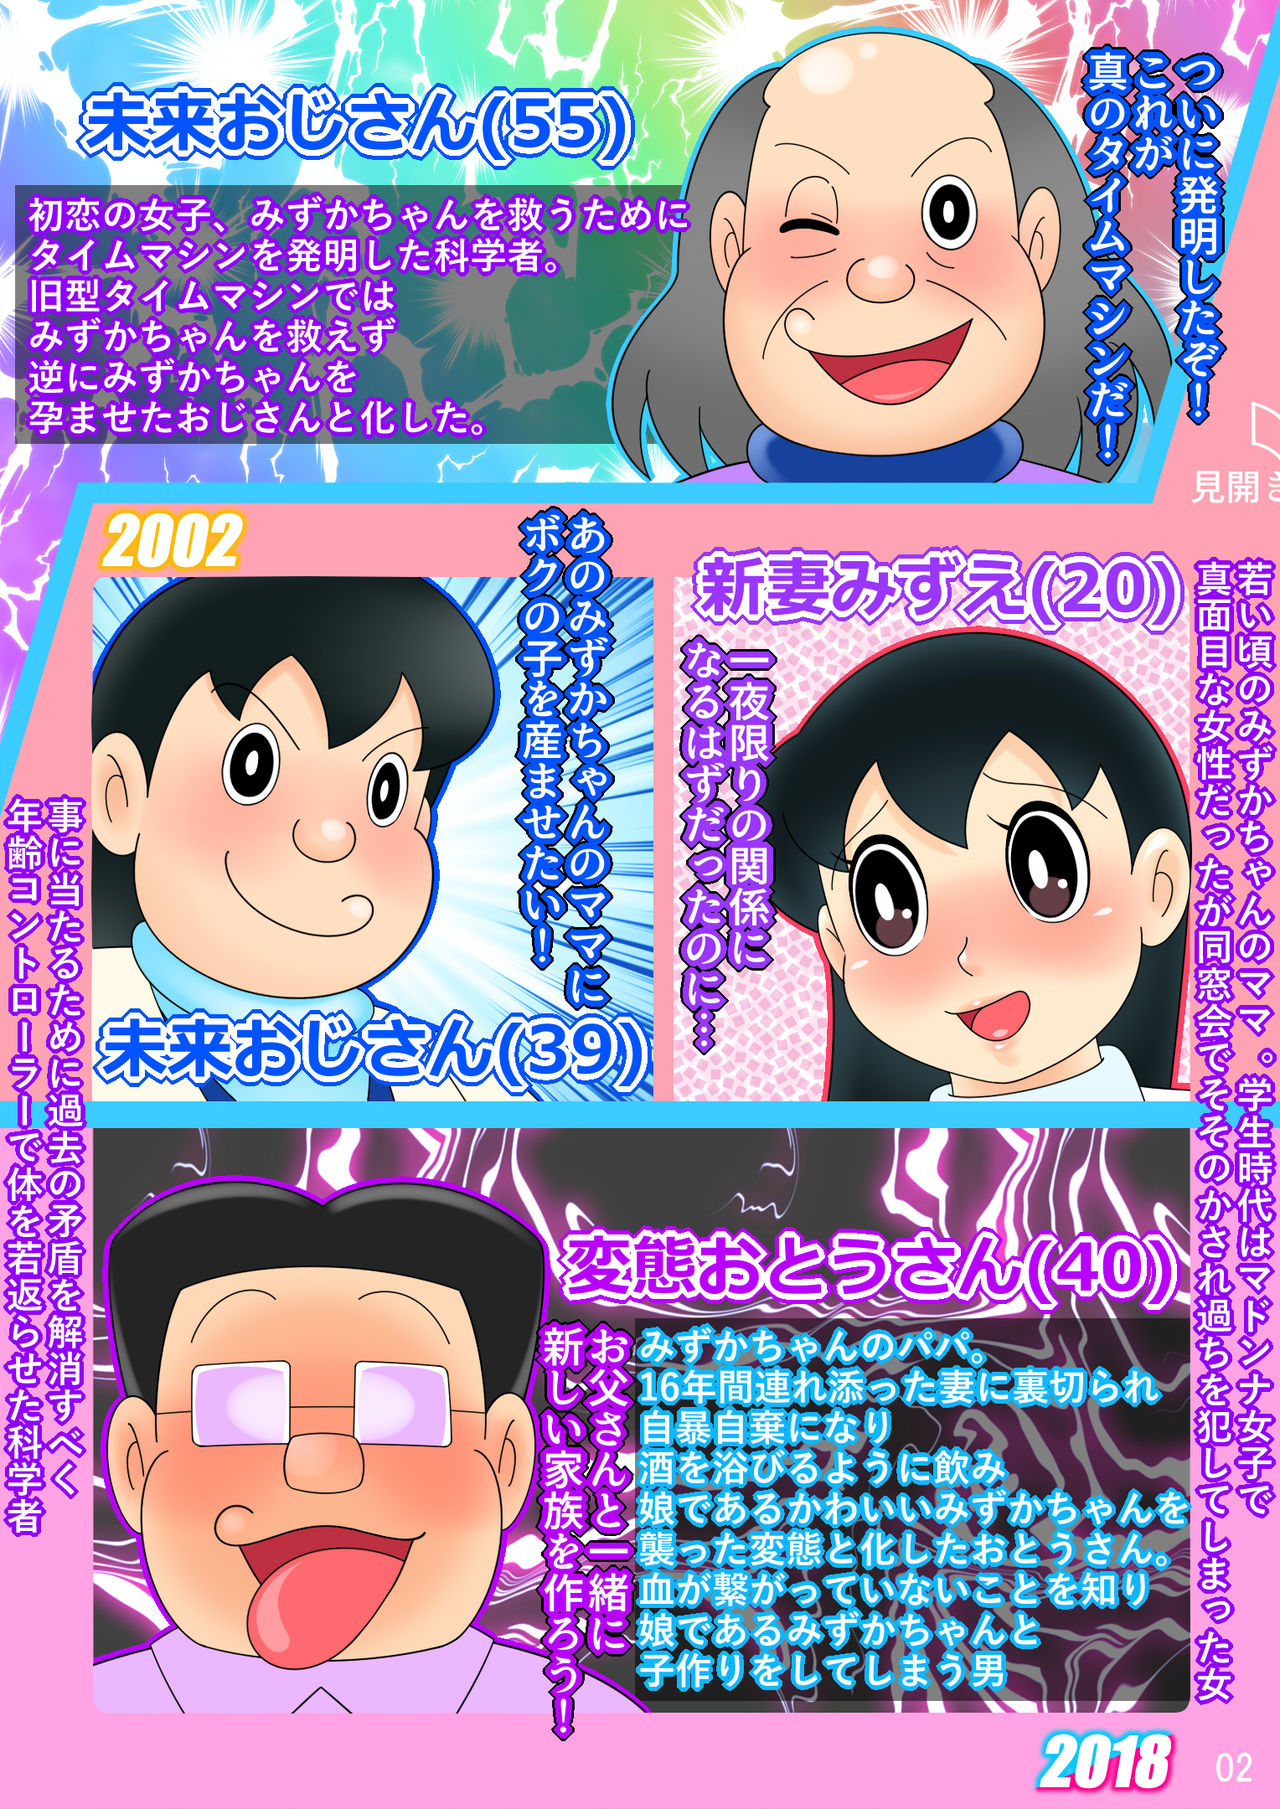 (Ho kuchi☆nanatsuboshi-chū) Yokubō kaihō taimu mashin aratame [mizu ka mama-hen] kako kaihen! Furin taku tamago& oyako dōji-ko-tsukuri (Doraemon) page 2 full